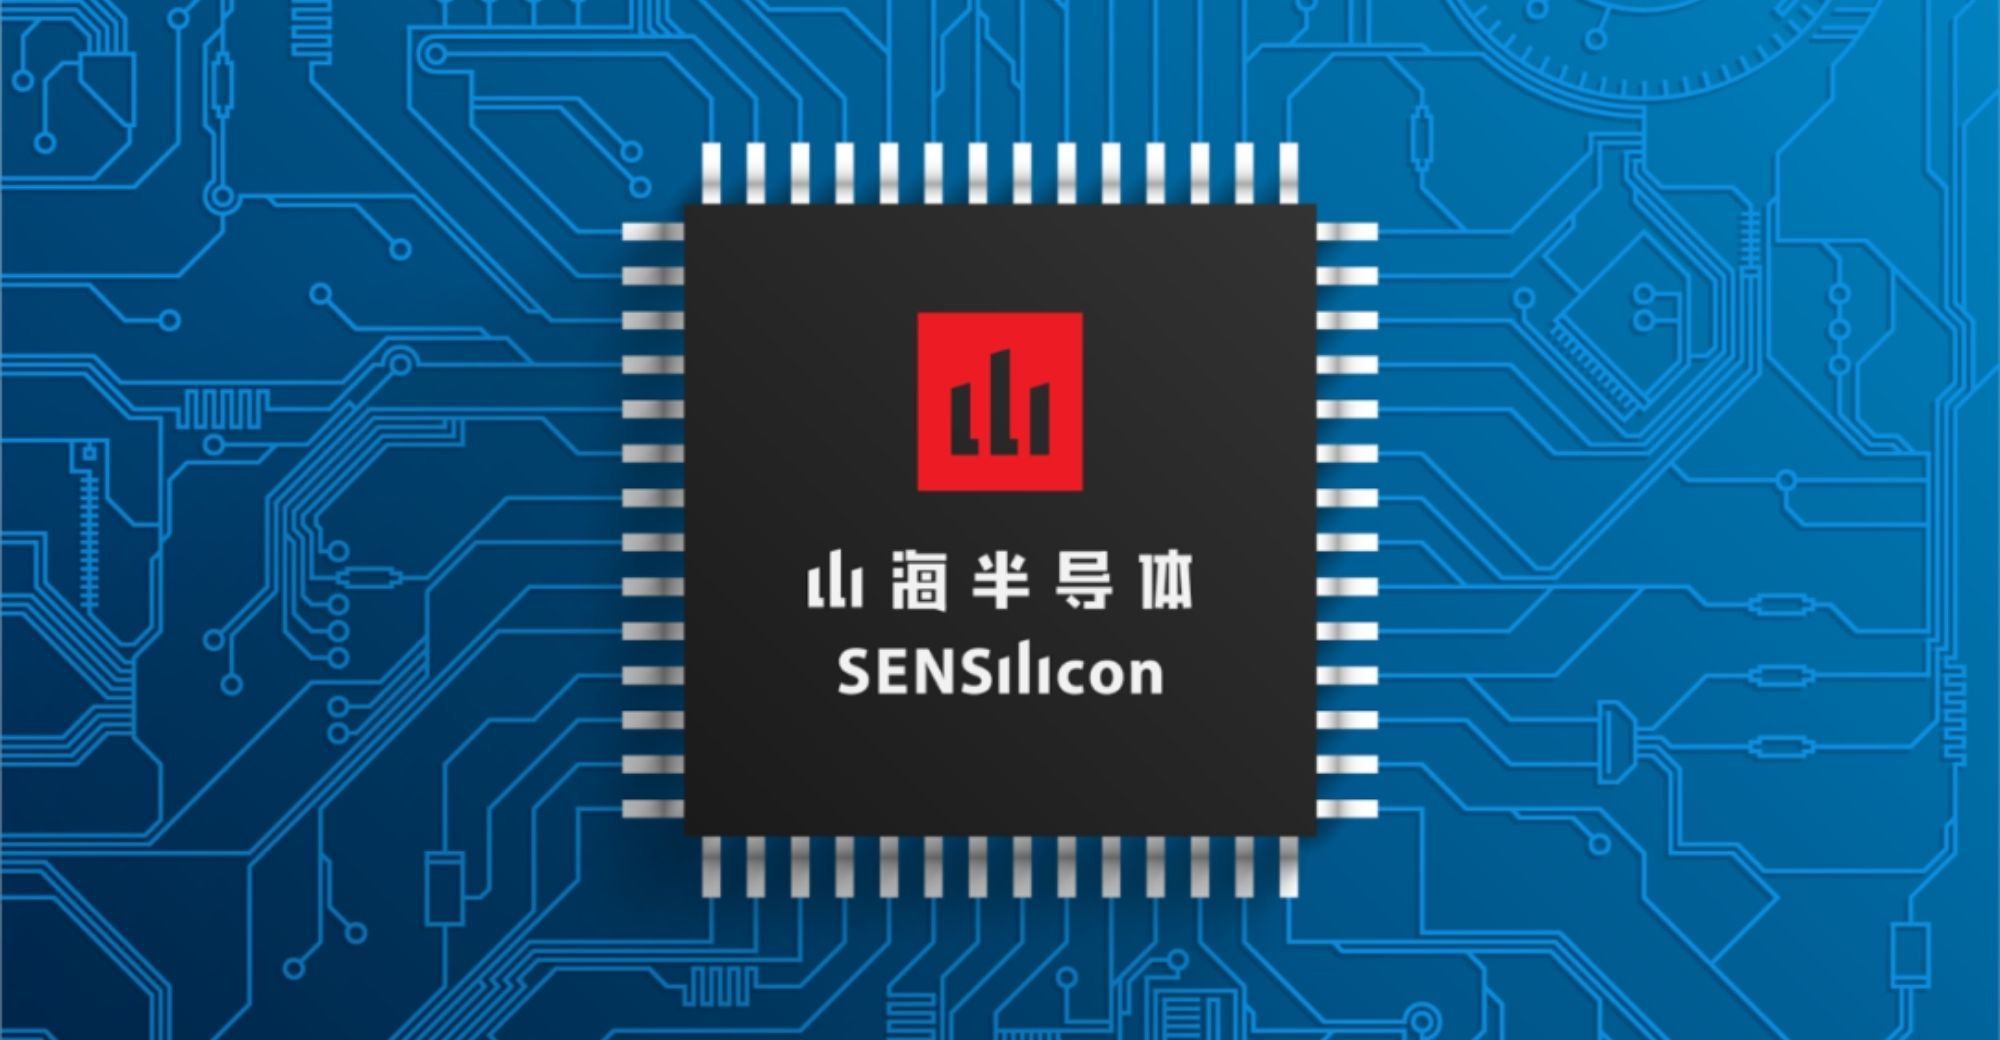 シグナル チェーン チップの開発者である SENSilicon が 17 万ドルのラウンド A 資金調達を確保